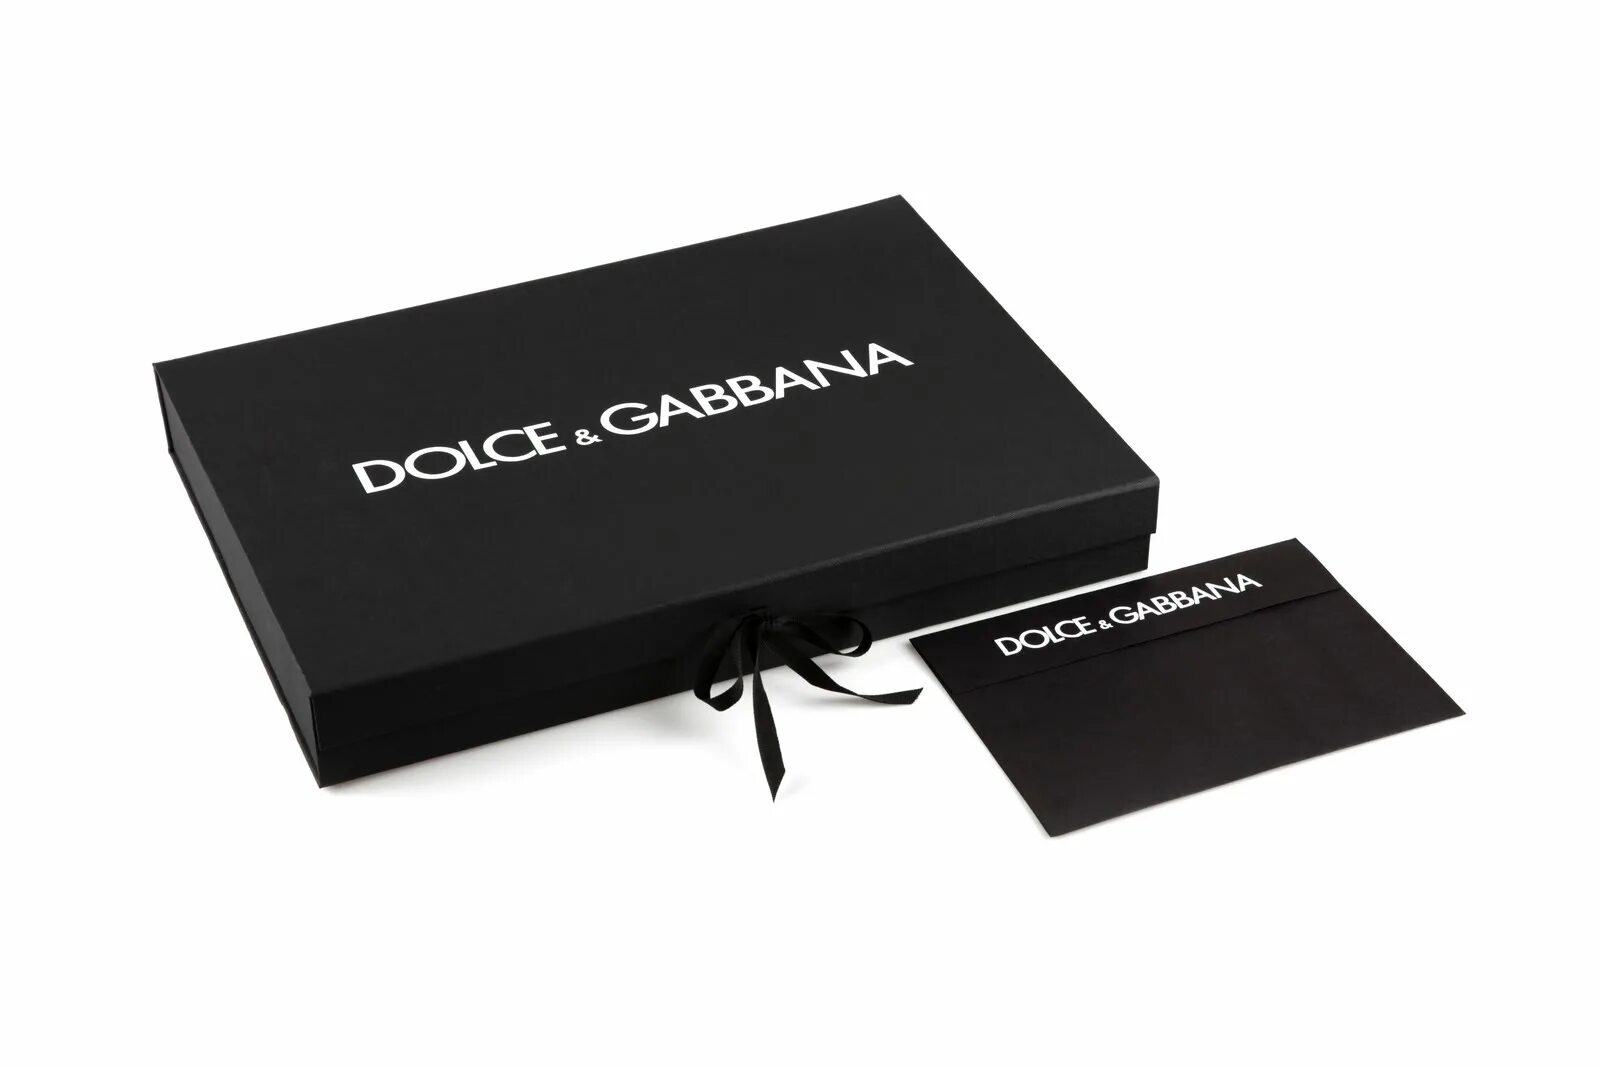 Дольче Габбана Дольче упаковка. Подарочный пакет Дольче Габбана. Пакет Dolce Gabbana оригинал. Дипломат Дольче Габбана.